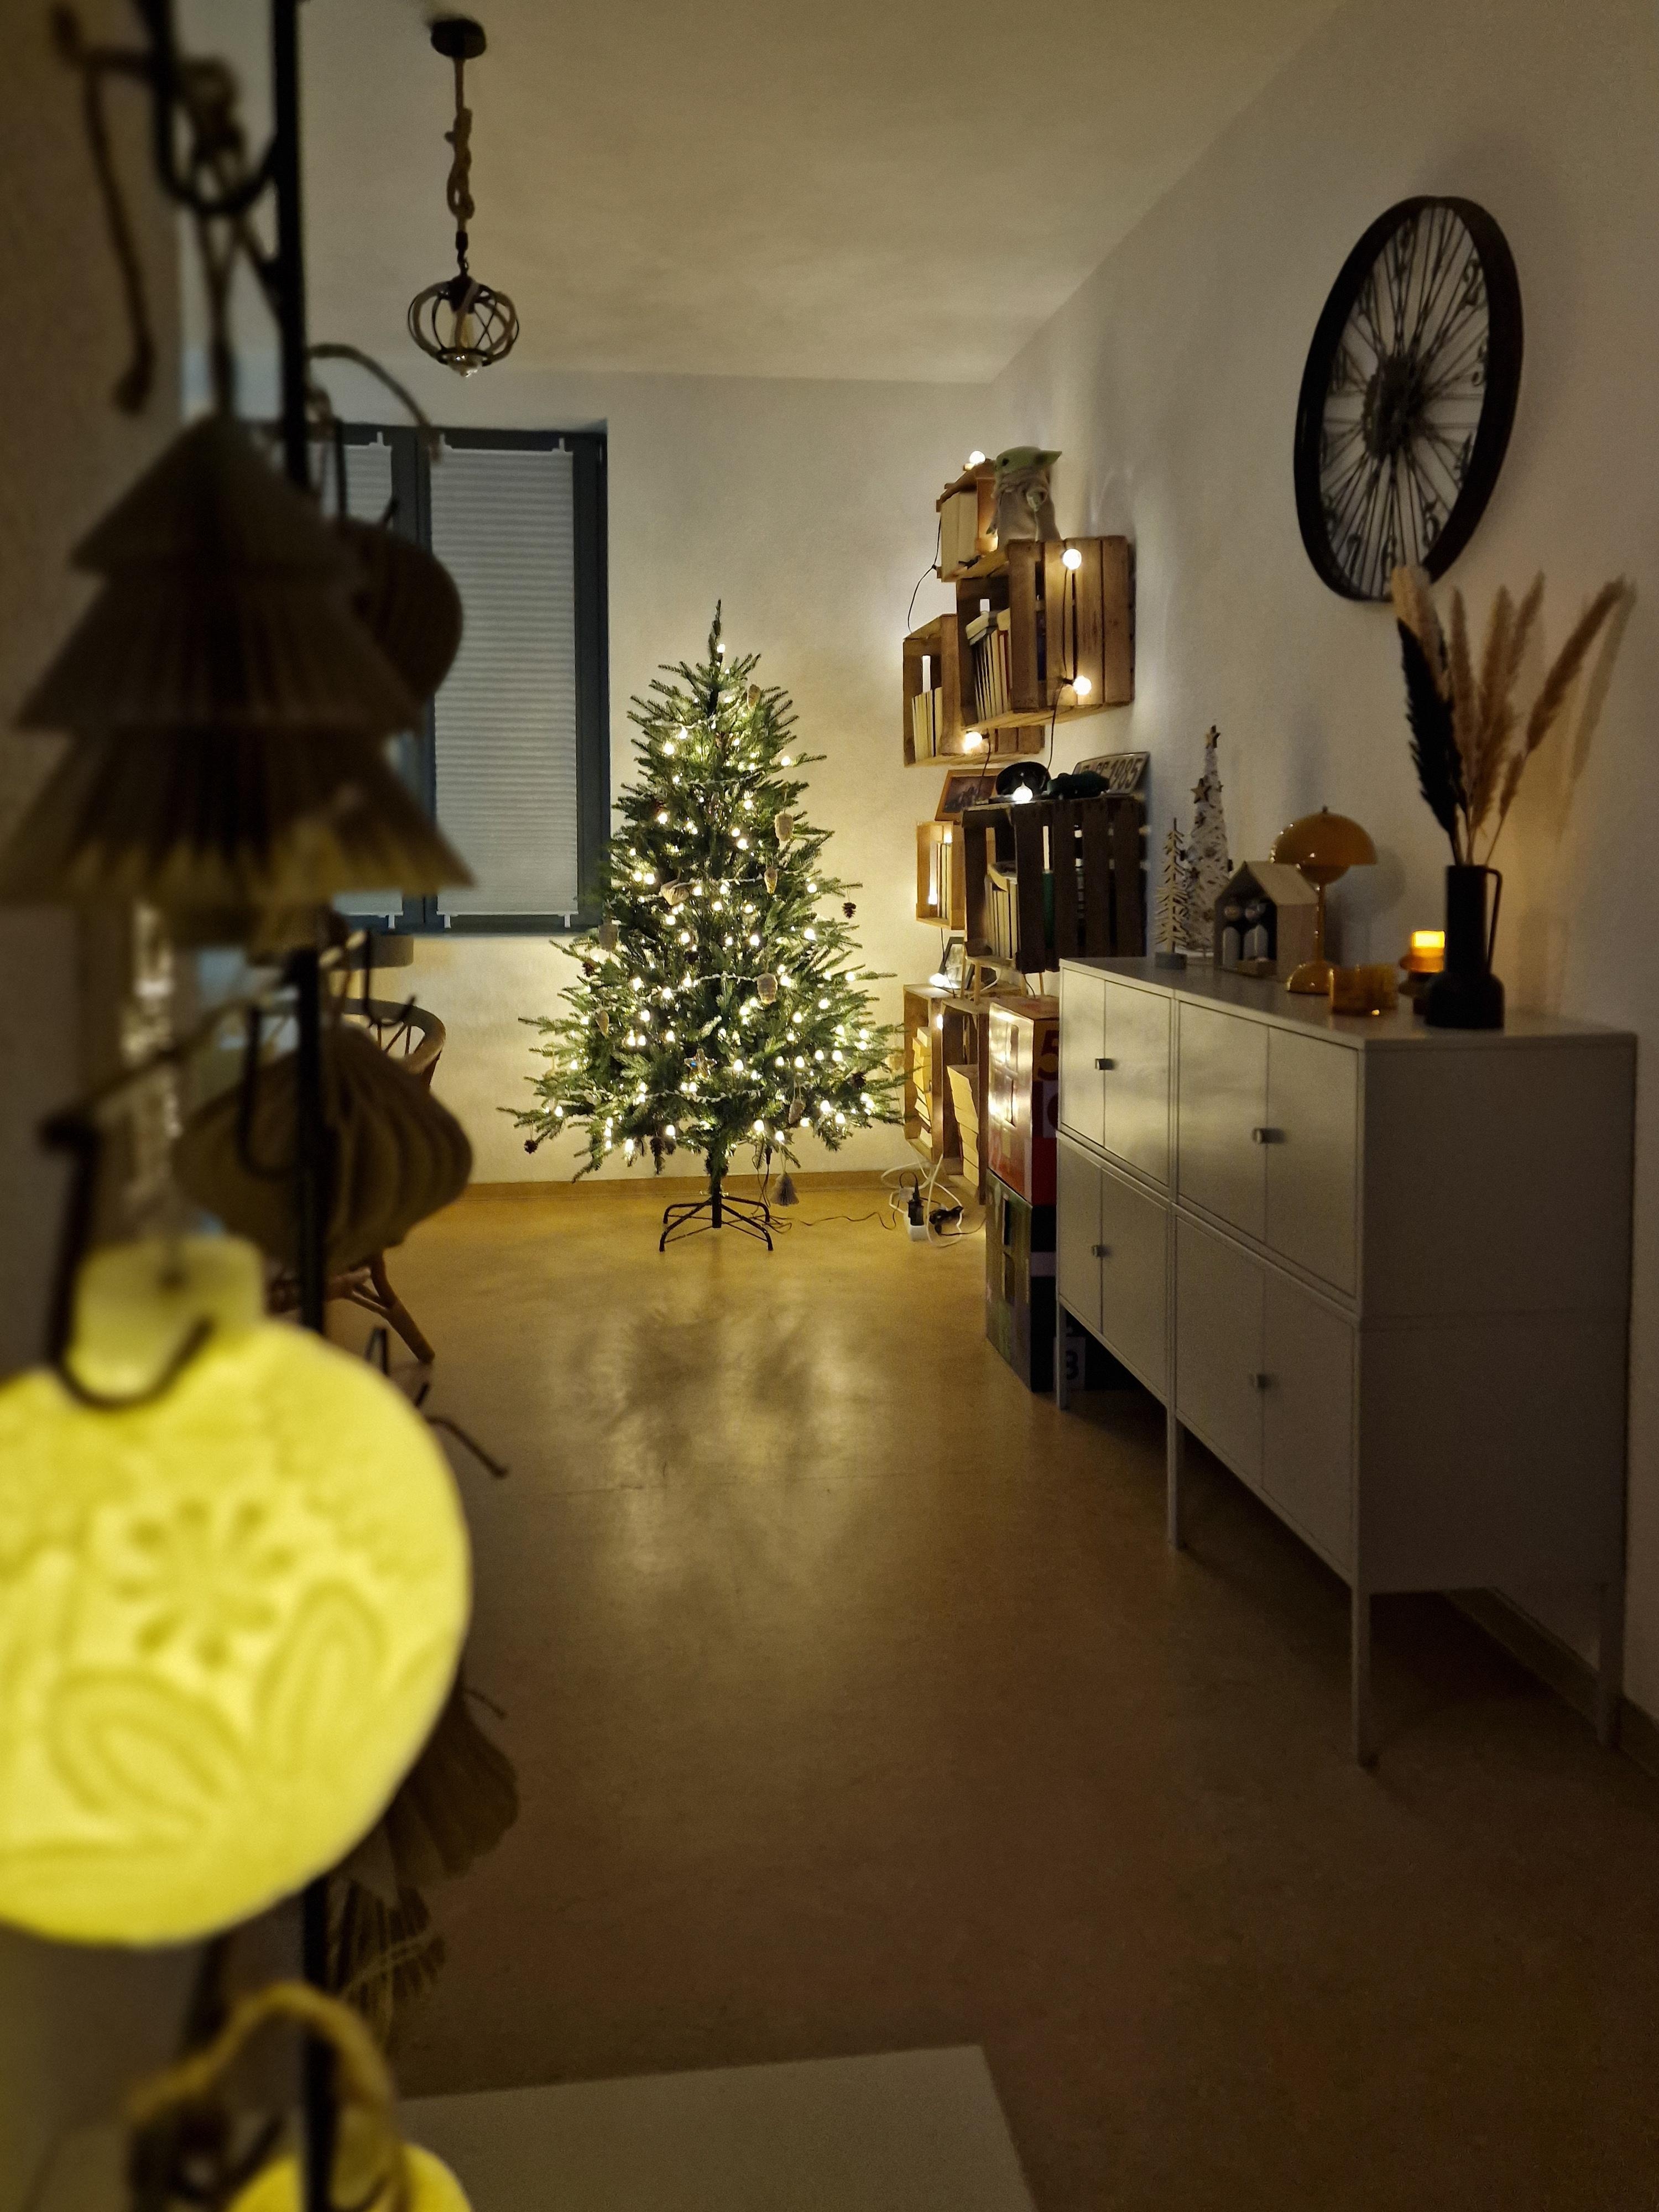 Der Baum kommt zum Zug.

#Weihnachtsbaum #Weihnachten #weihnachtsdeko #Tannenbaum #wohnzimmer #dekoideen